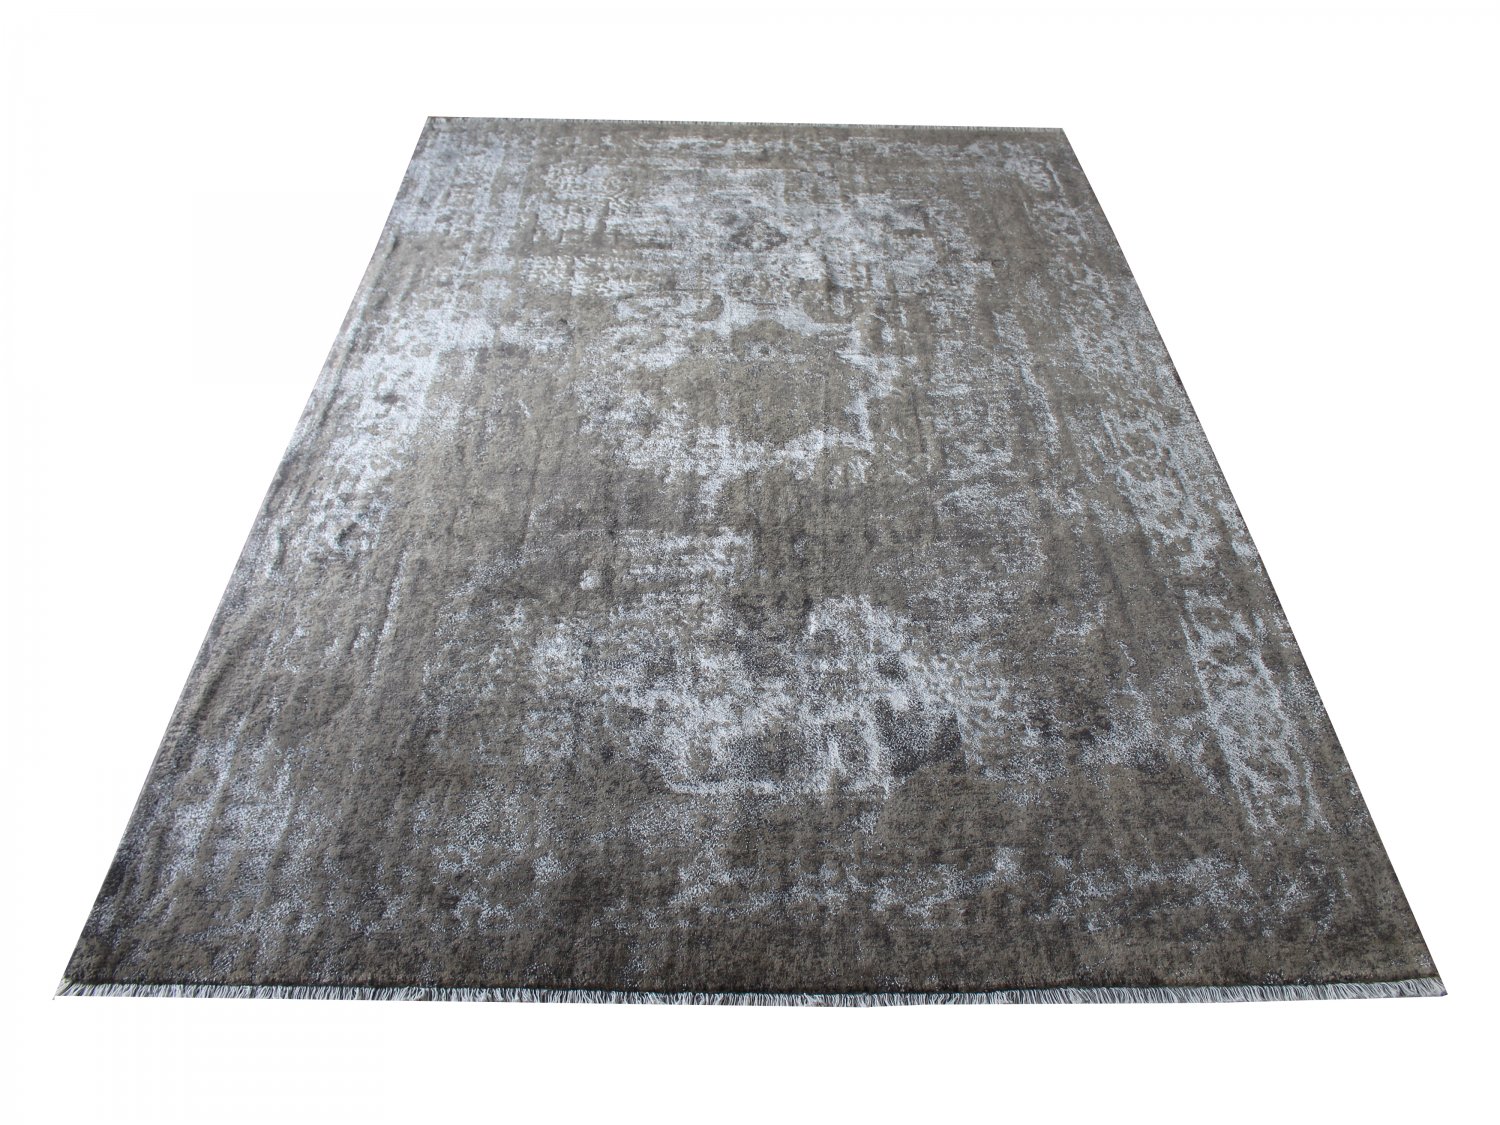 فرش پشمی ماشینی طبیعی و ارگانیک کد 0101 - زمینه طوسی کم رنگ - حاشیه طوسی کم رنگ